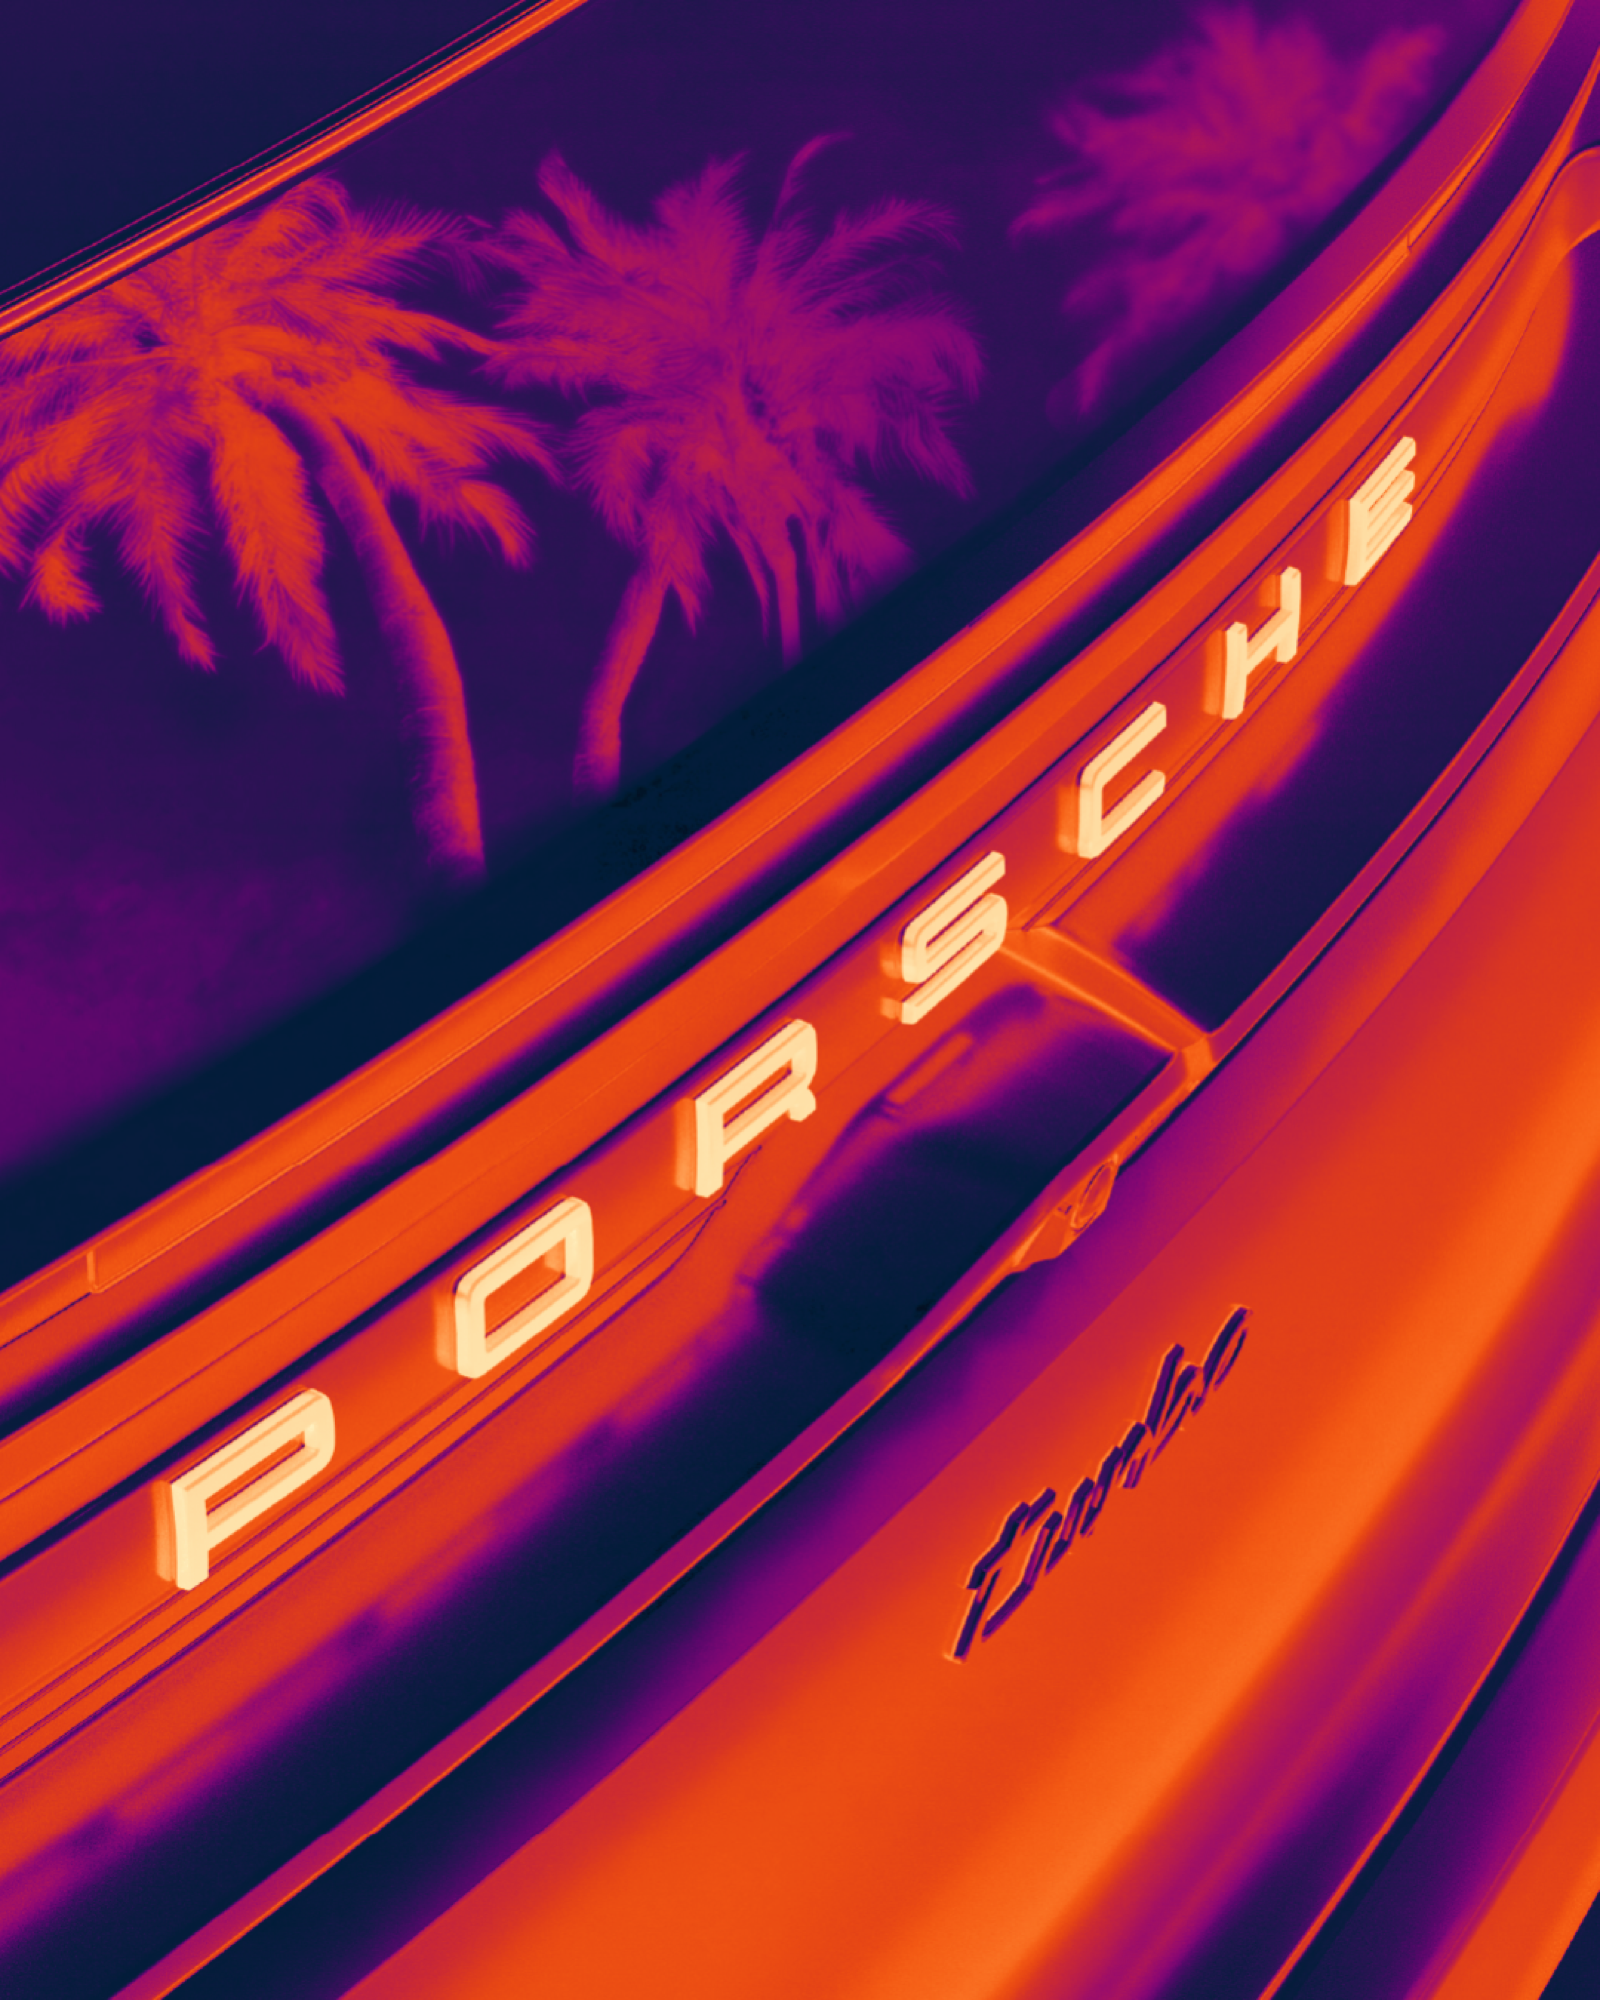 Porsche SCOPES ritorna per celebrare arte, design, musica e tecnologia Dal 26 al 28 aprile